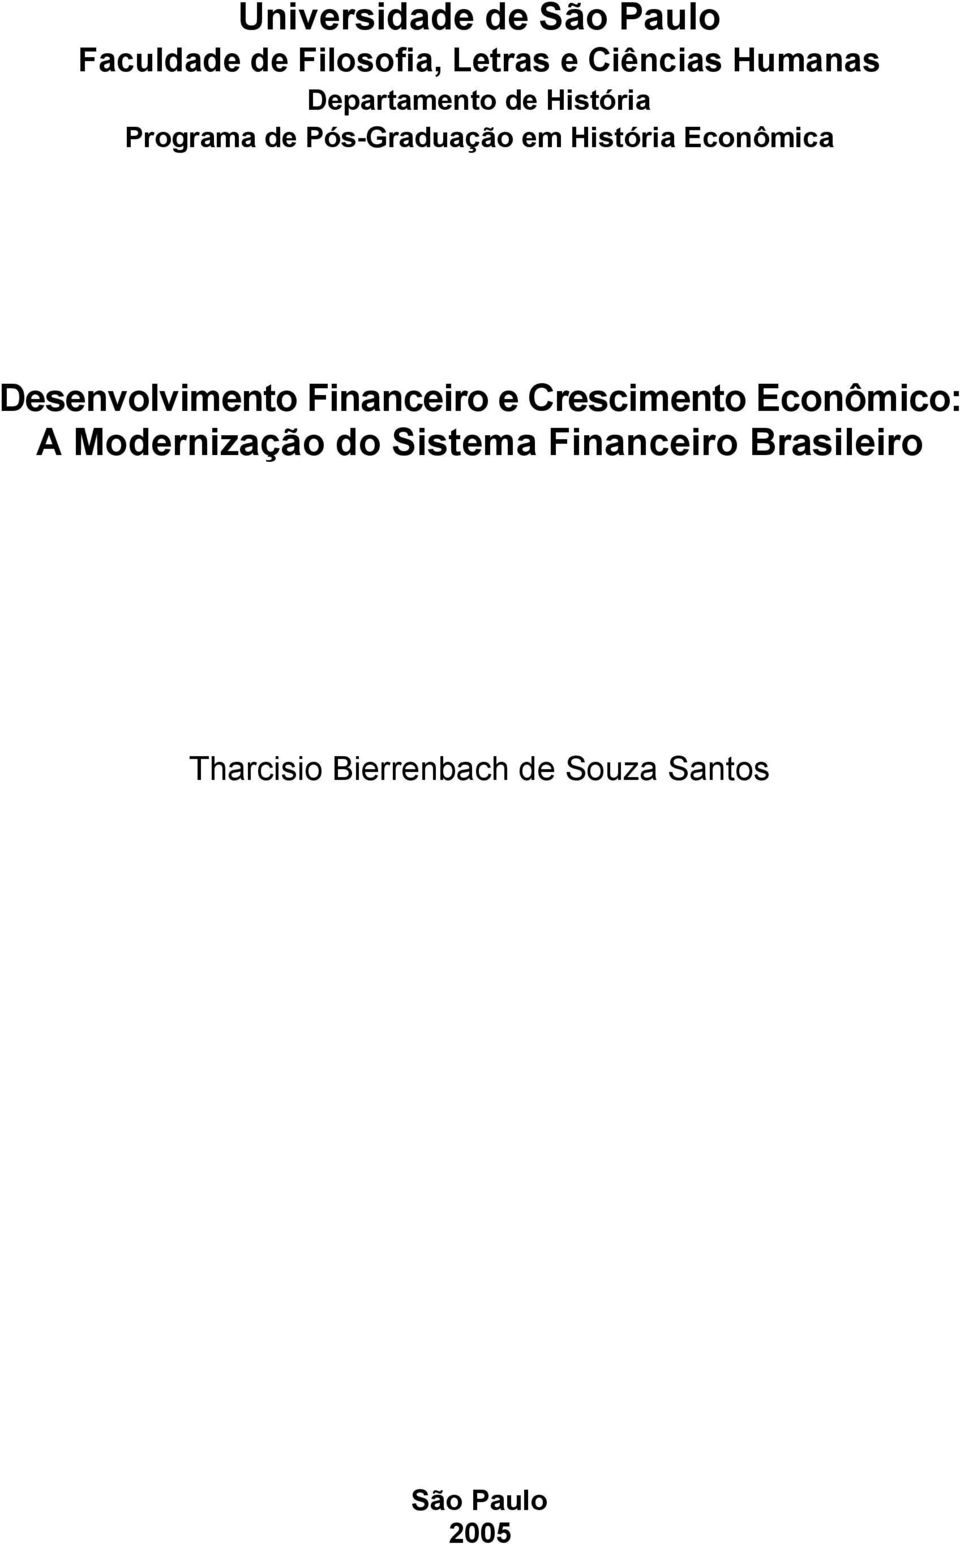 Desenvolvimento Financeiro e Crescimento Econômico: A Modernização do